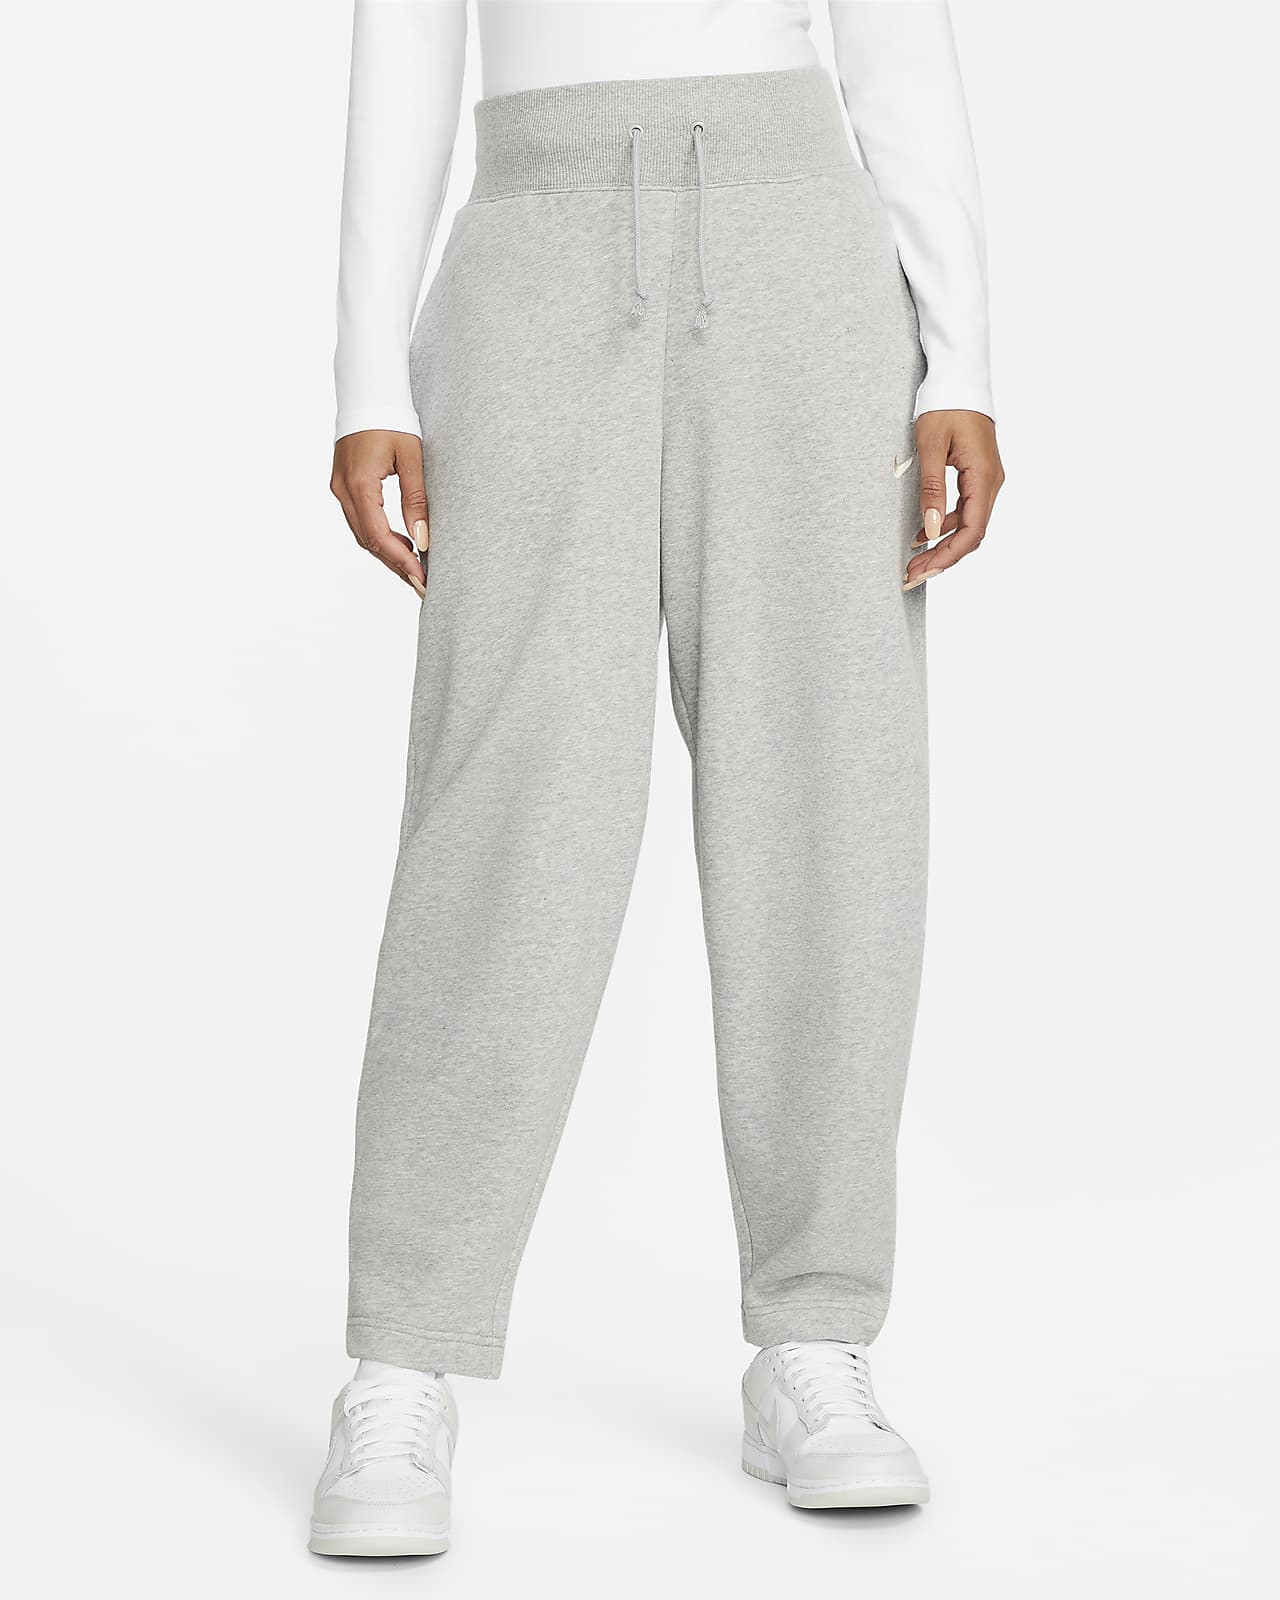 Nike Womens Phoenix Fleece Pants - Grey